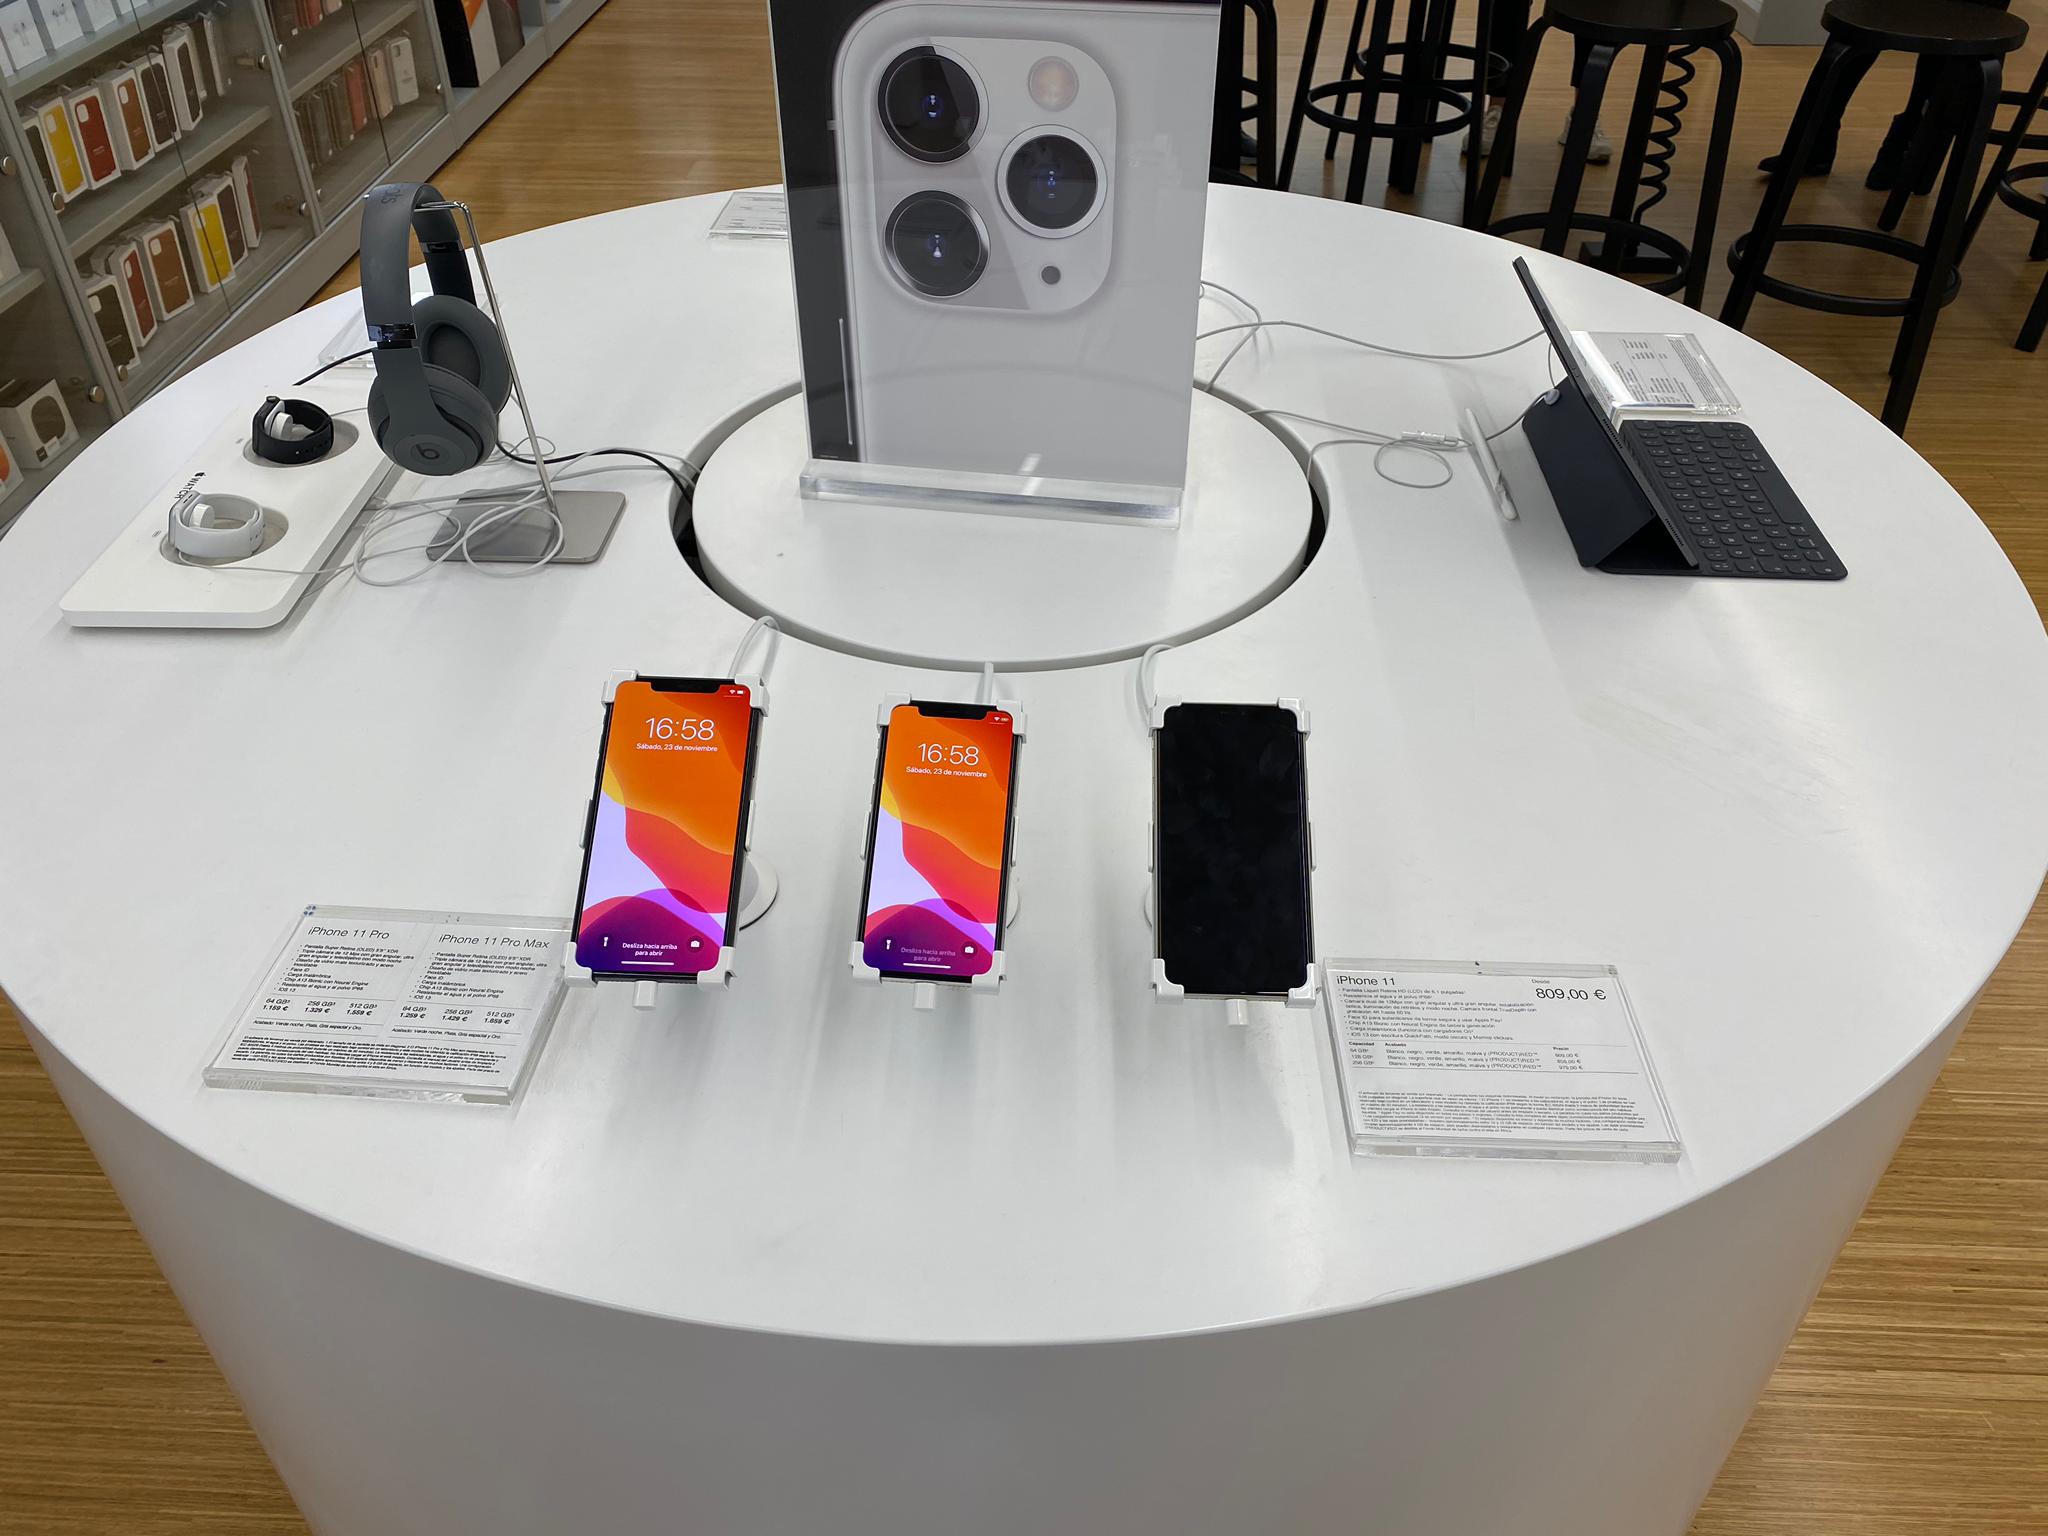 SBC instala soluciones para dispositivos Apple en 10 tiendas